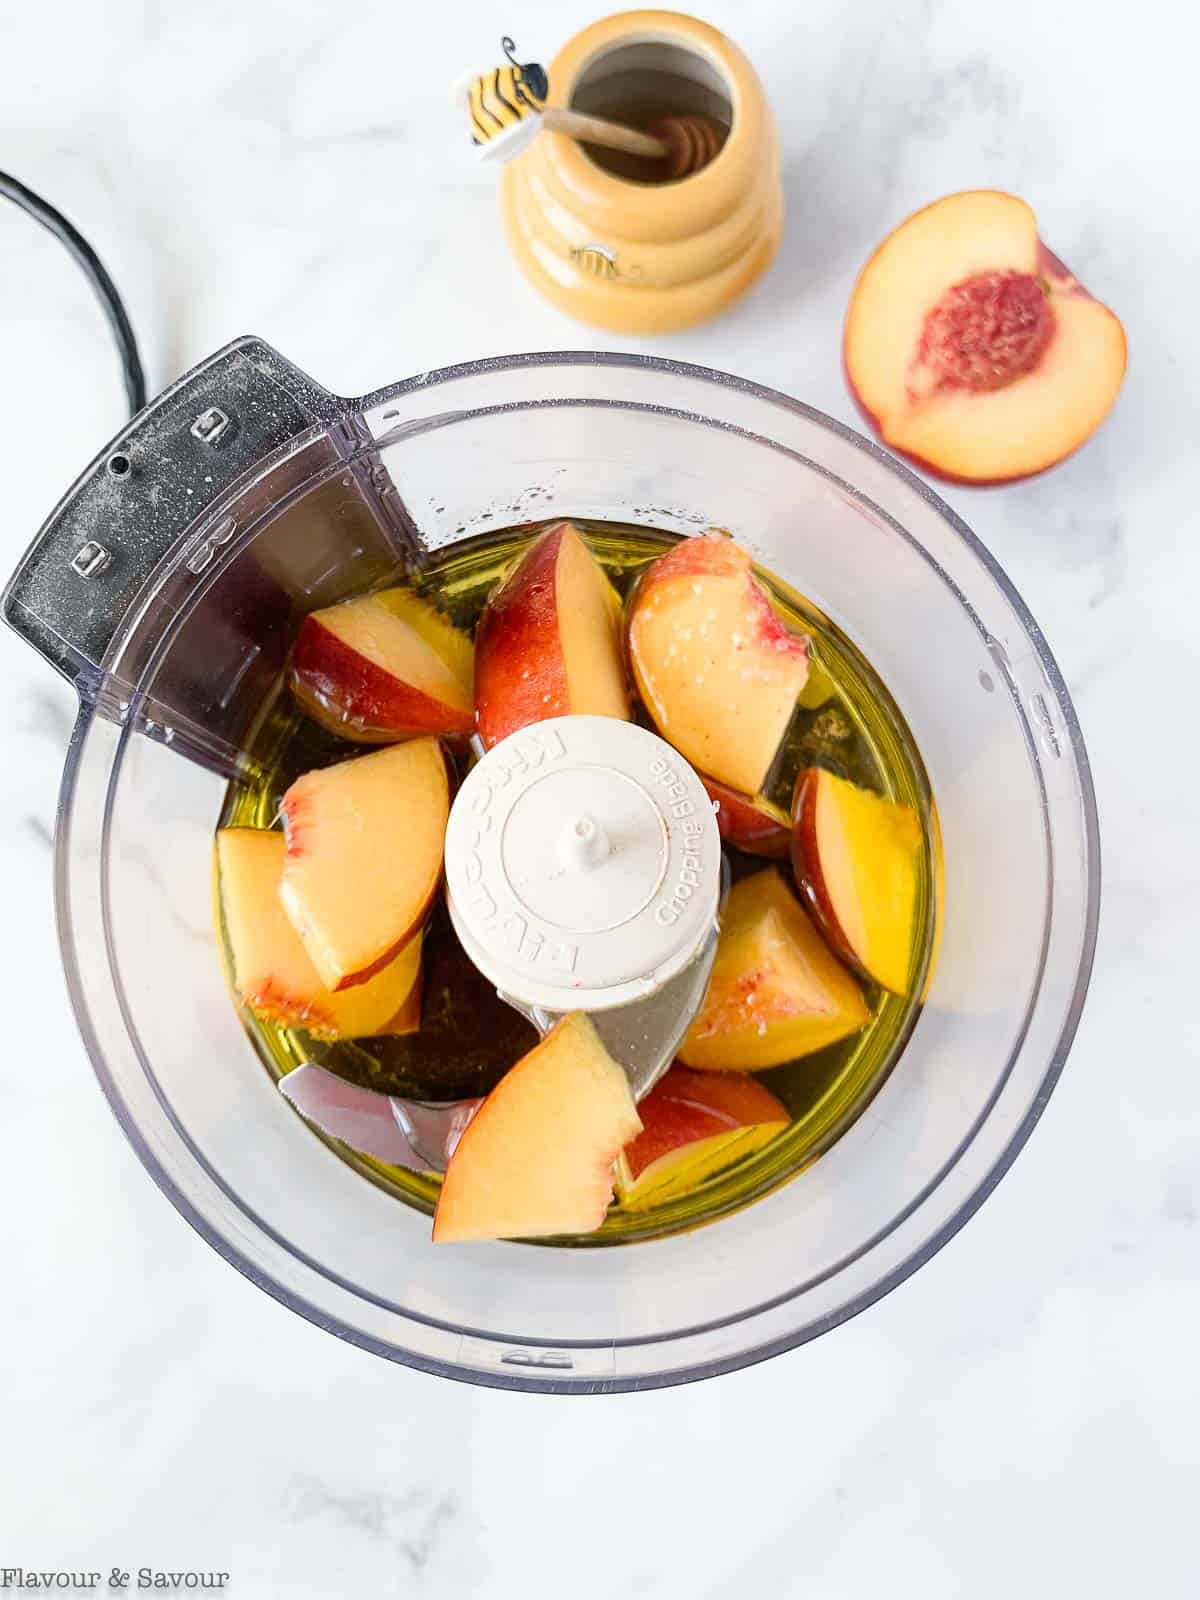 Sweet peach salad dressing ingredients in a blender